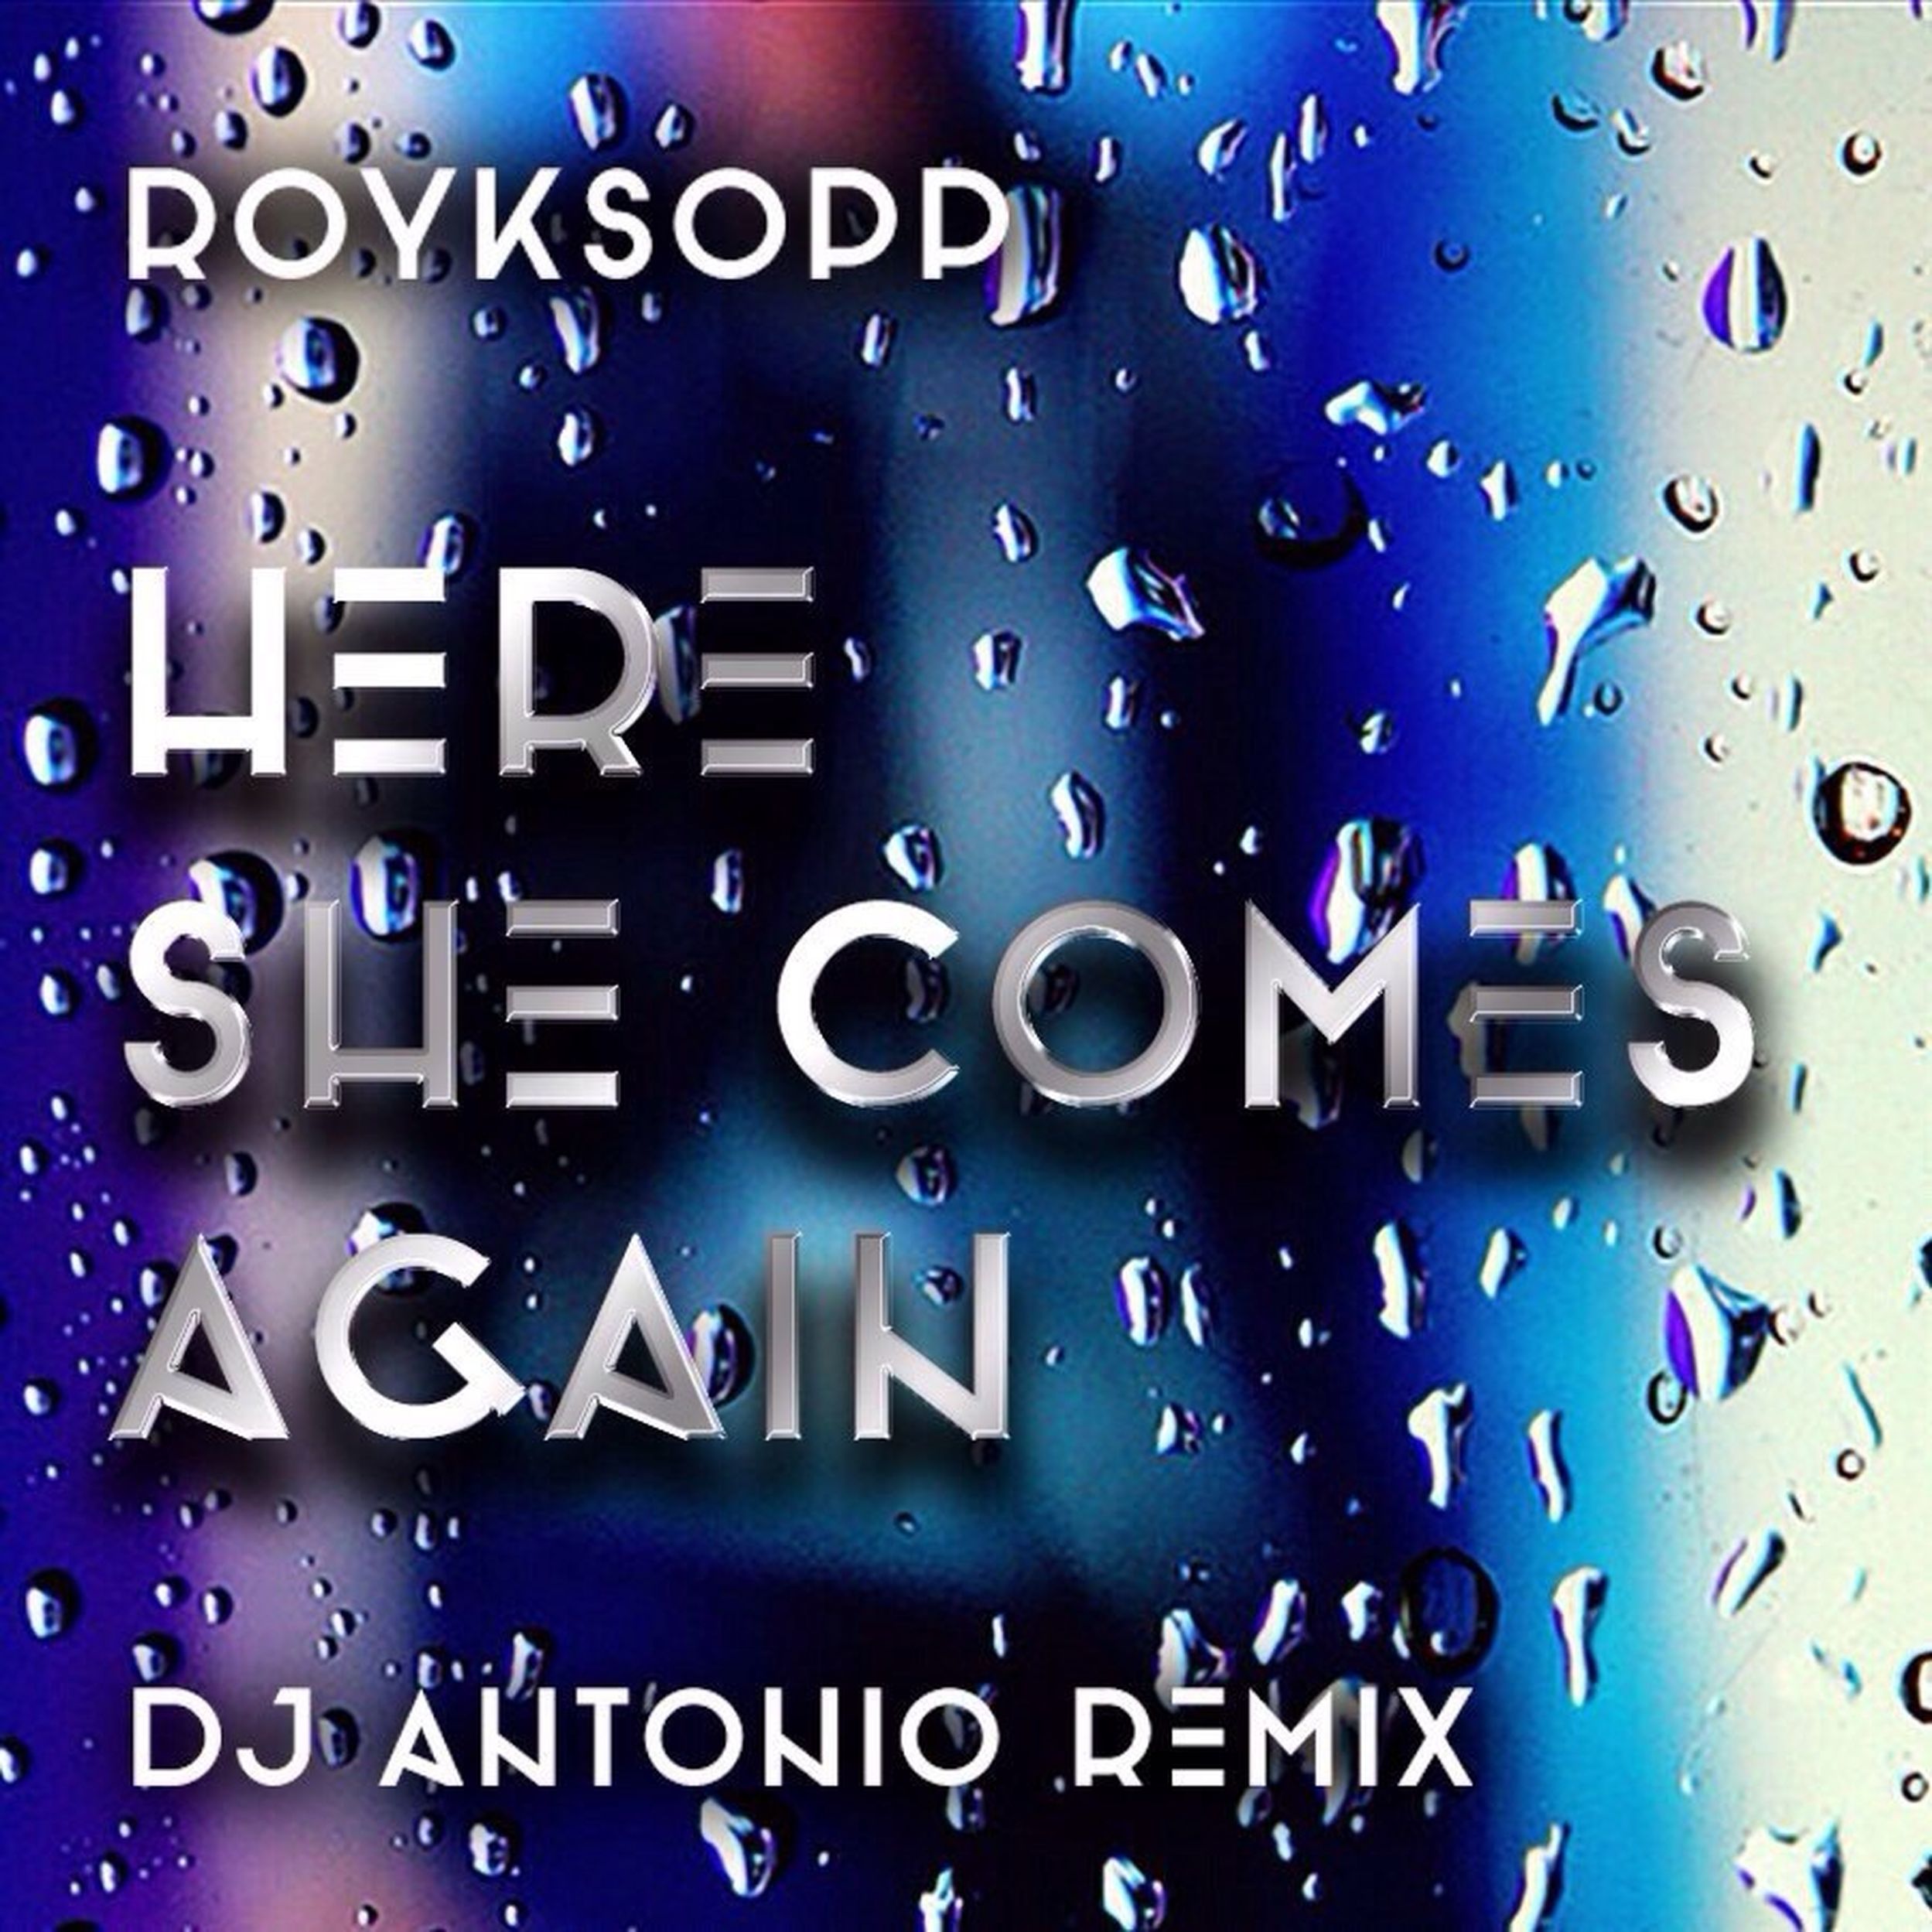 Comes again на звонок. Here she comes again (DJ Antonio Remix). Royksopp here she comes again. DJ Antonio Royksopp. Royksopp here she comes again DJ Antonio Remix.